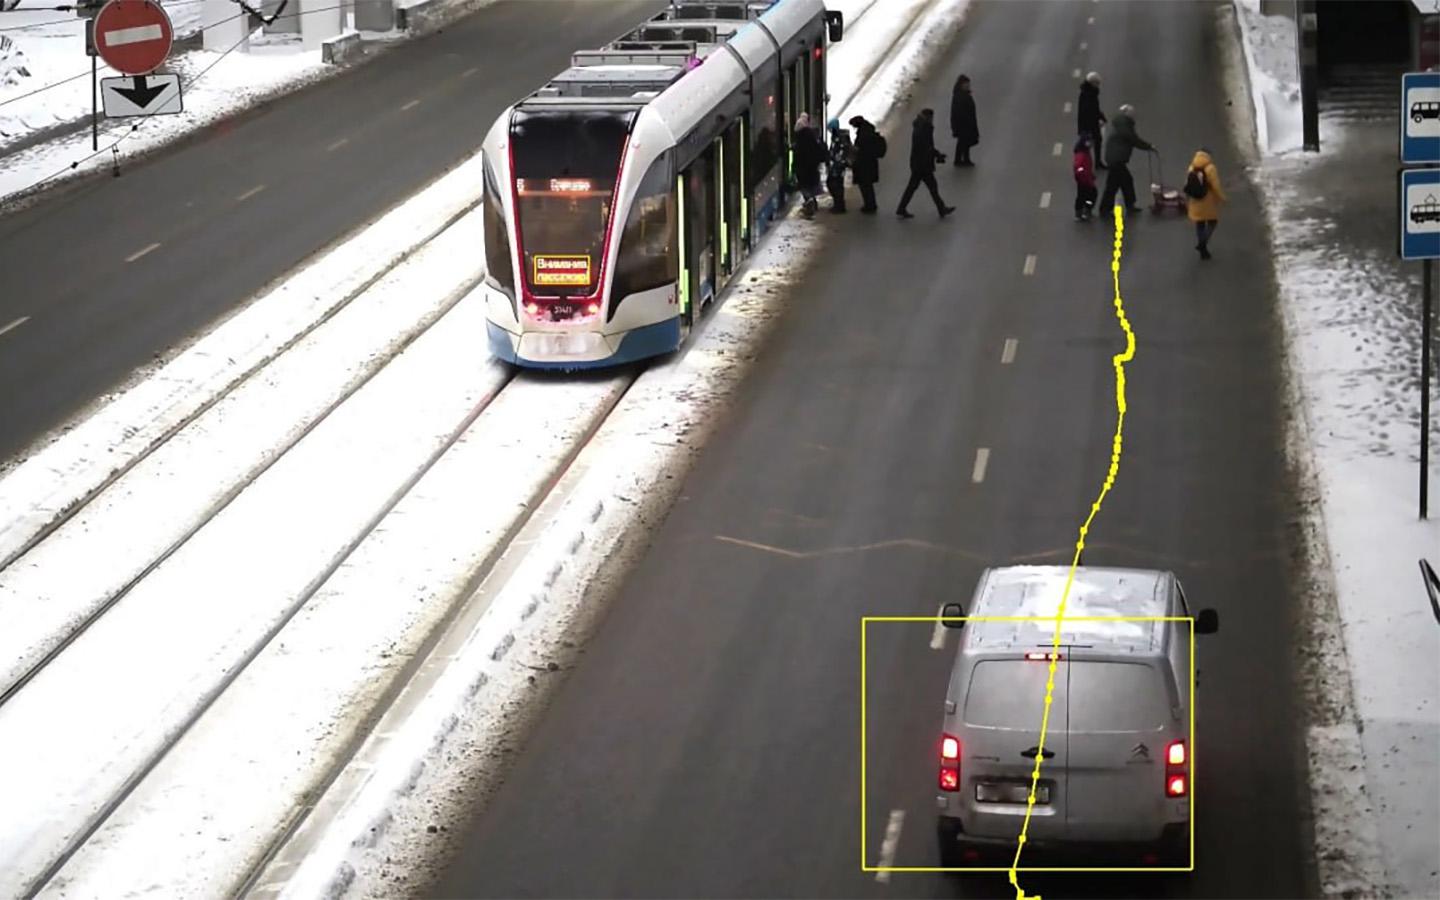 Камеры начали фиксировать непропуск пешеходов к трамваям. Что случилось